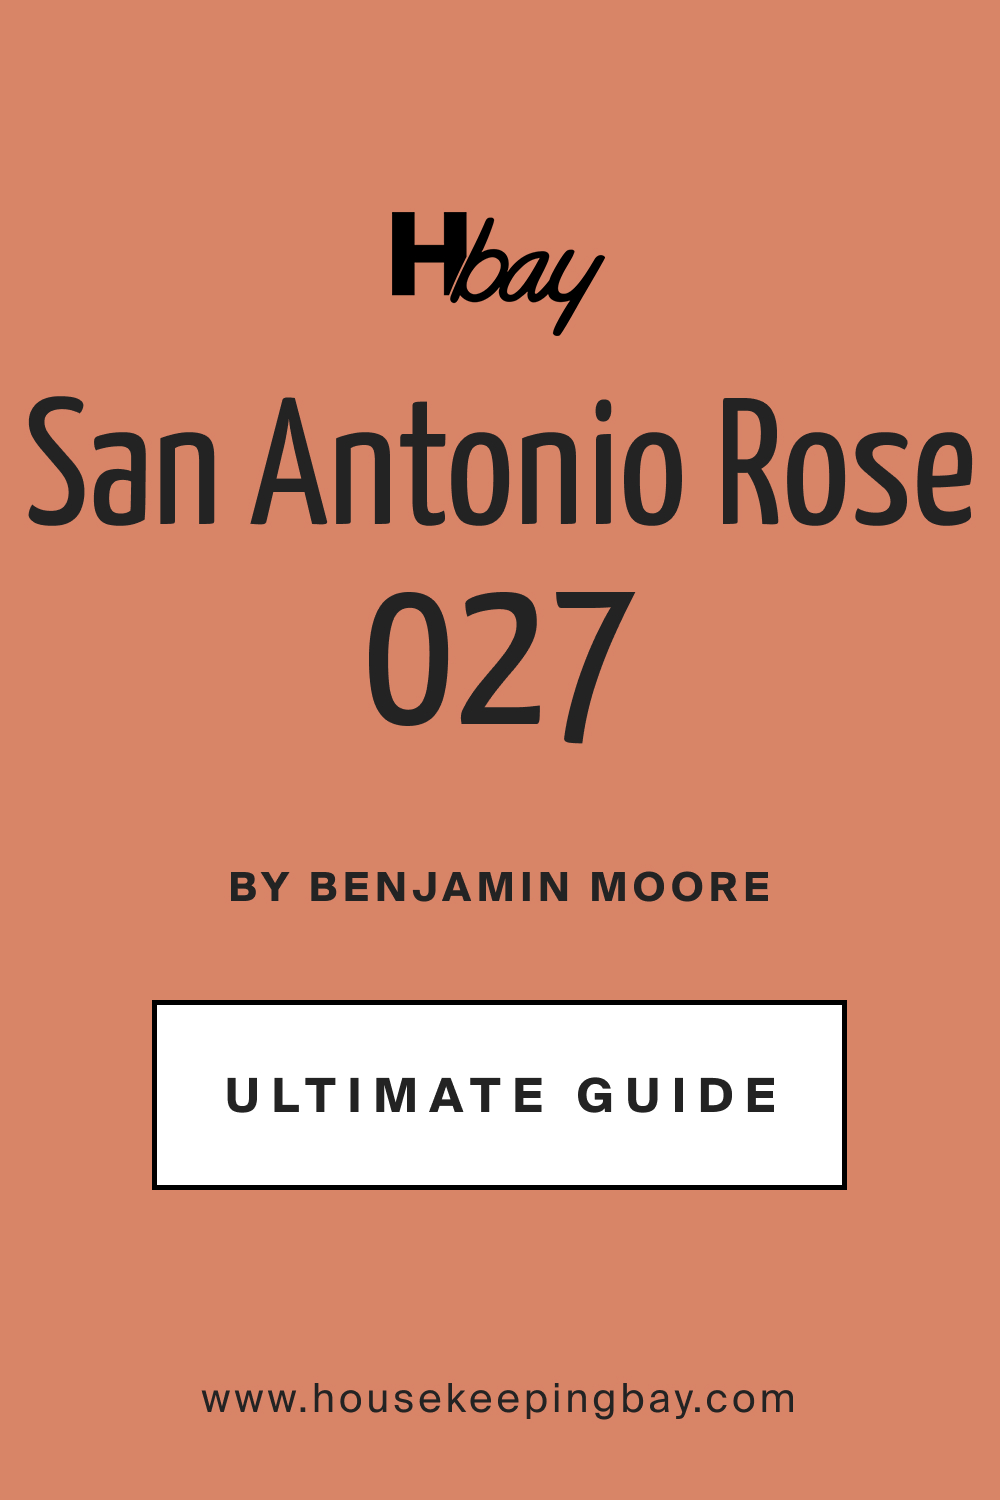 San Antonio Rose 027 by Benjamin Moore Ultimate Guide